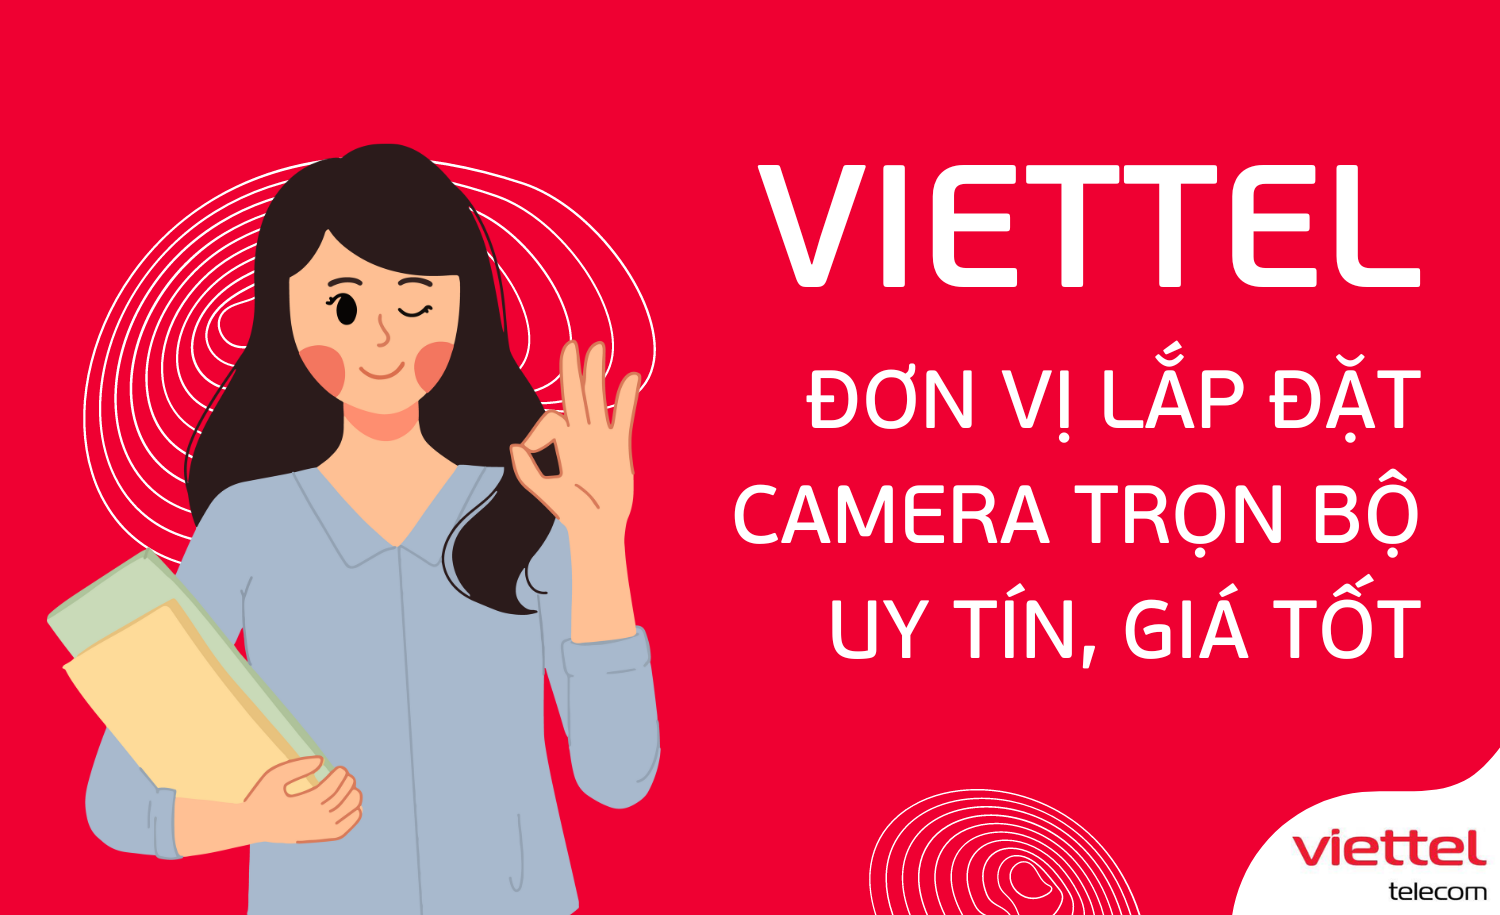 Viettel - Đơn vị lắp đặt camera trọn bộ uy tín, giá tốt